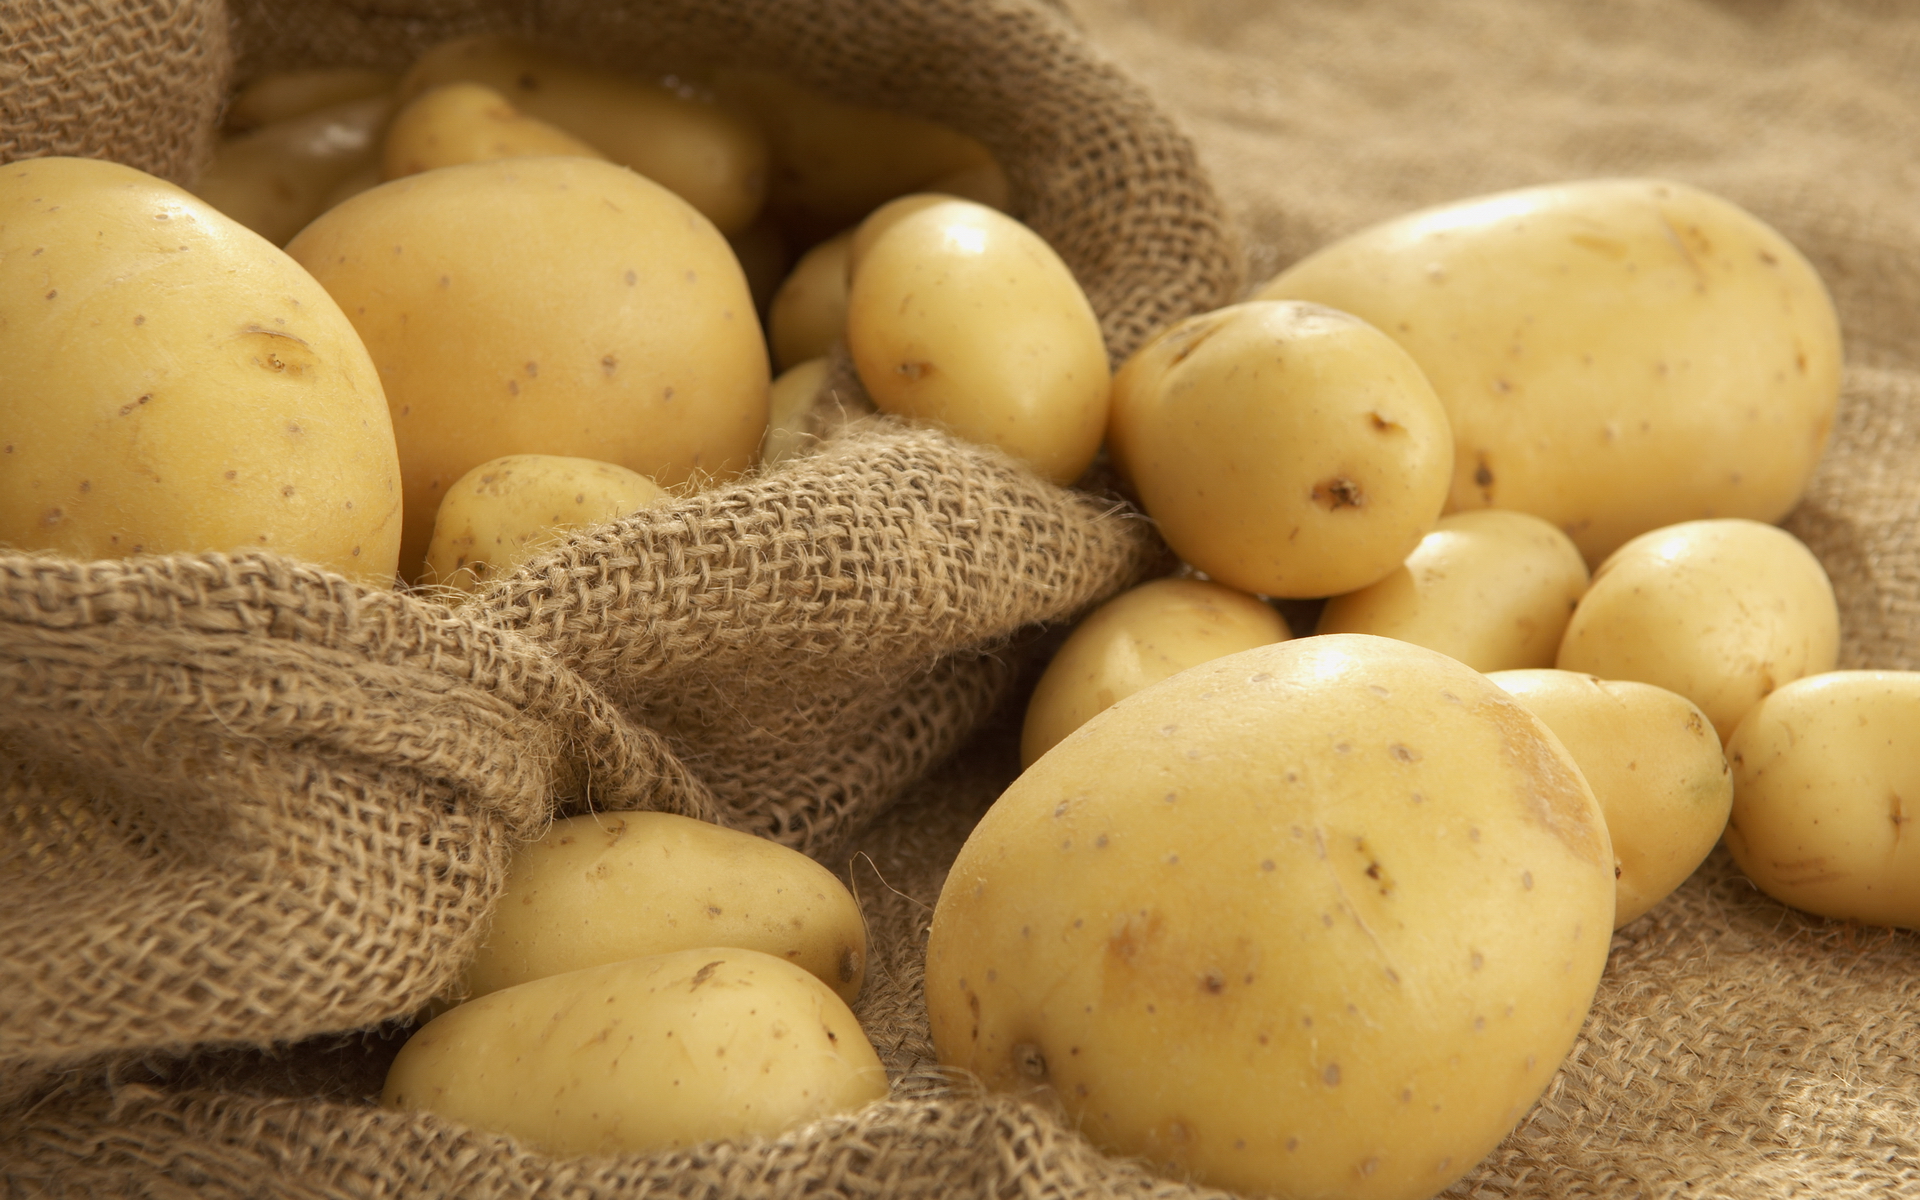 Хороший урожай картофеля и овощей собирают западноказахстанские аграрии